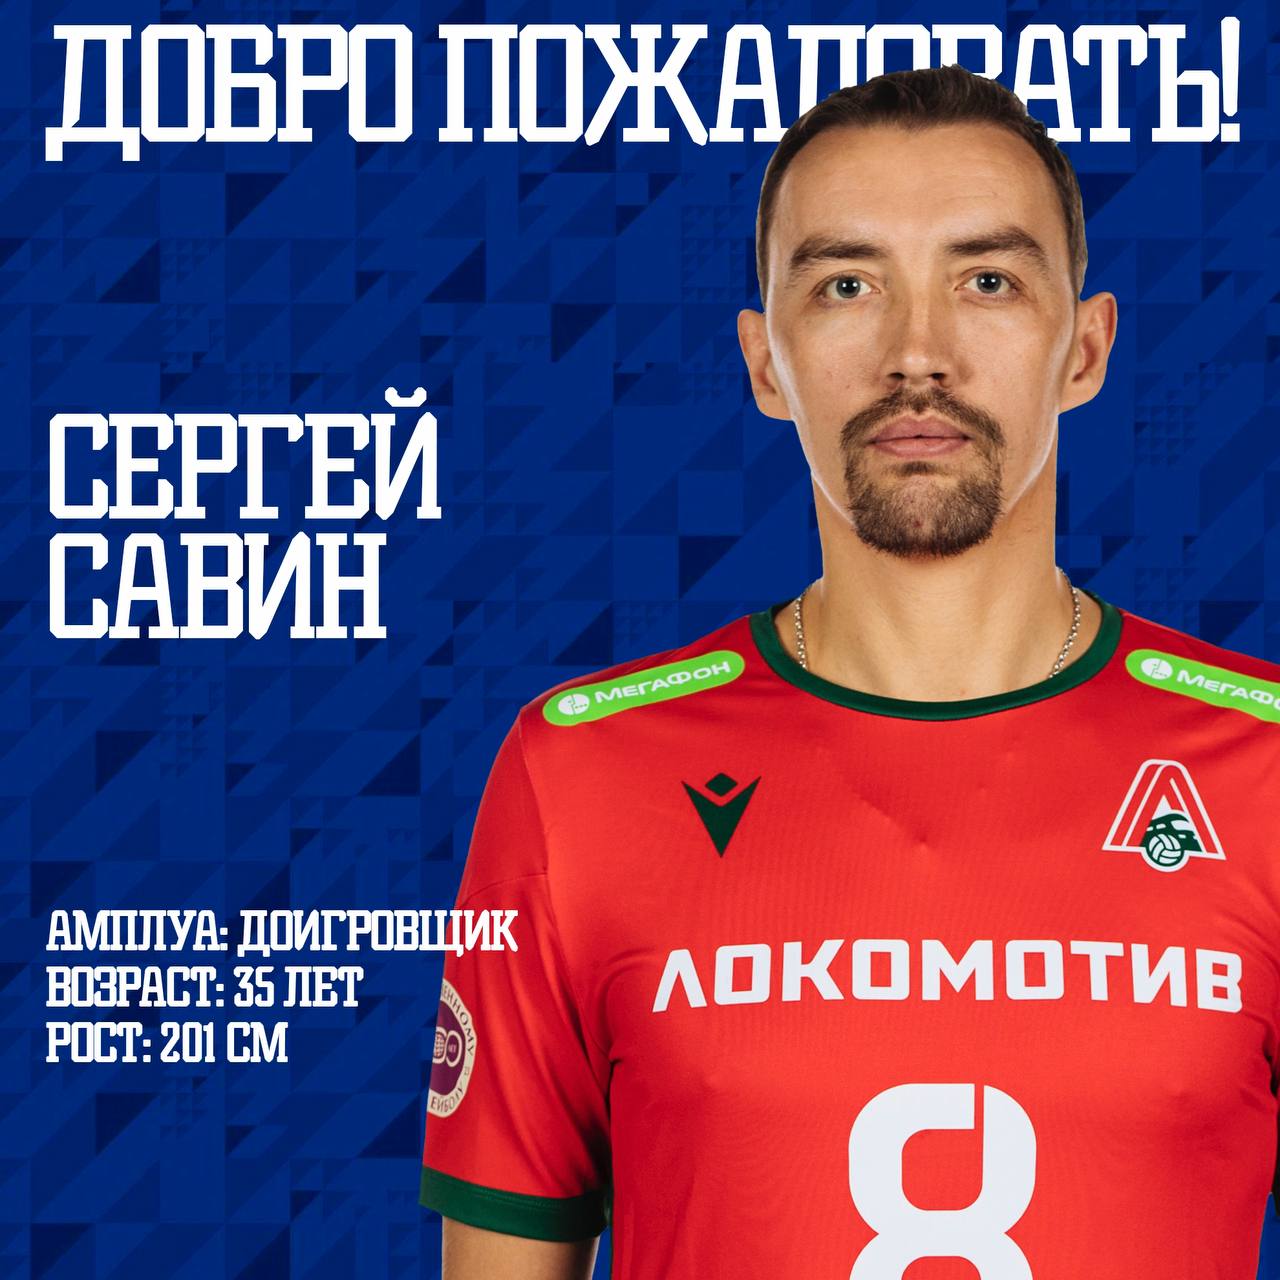 Новость о новом игроке ВК «Урал»